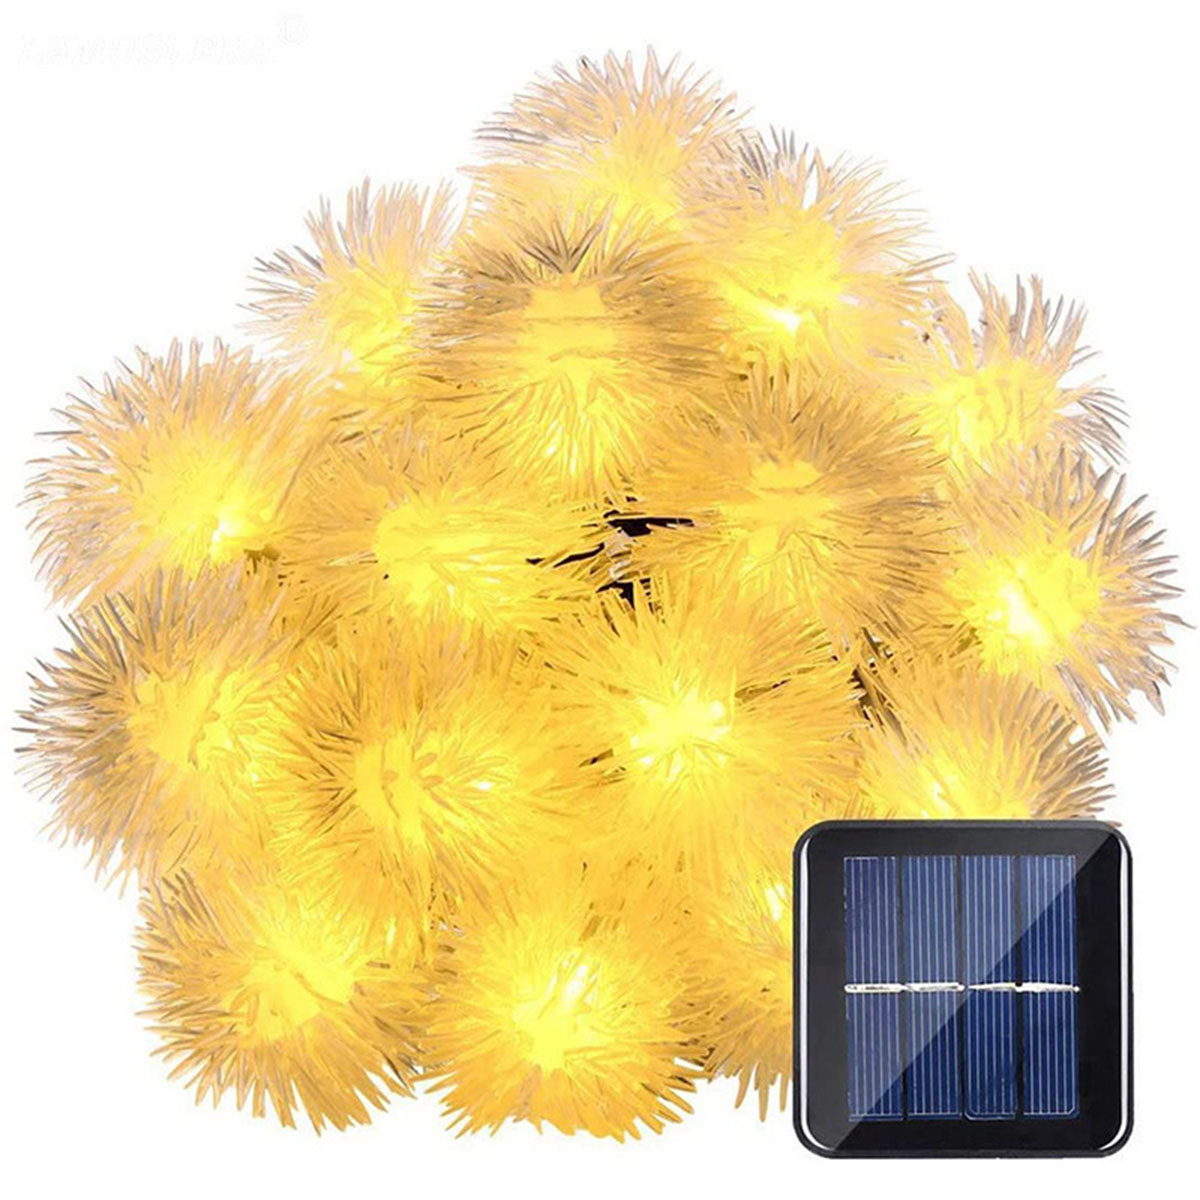 Haarballenlampe Warmweiß 7 50 LAMON Solar-Lichterketten, Solarleuchte, Meter warmweiß, Haarballen-Lampe, Funktionen Leuchten 8